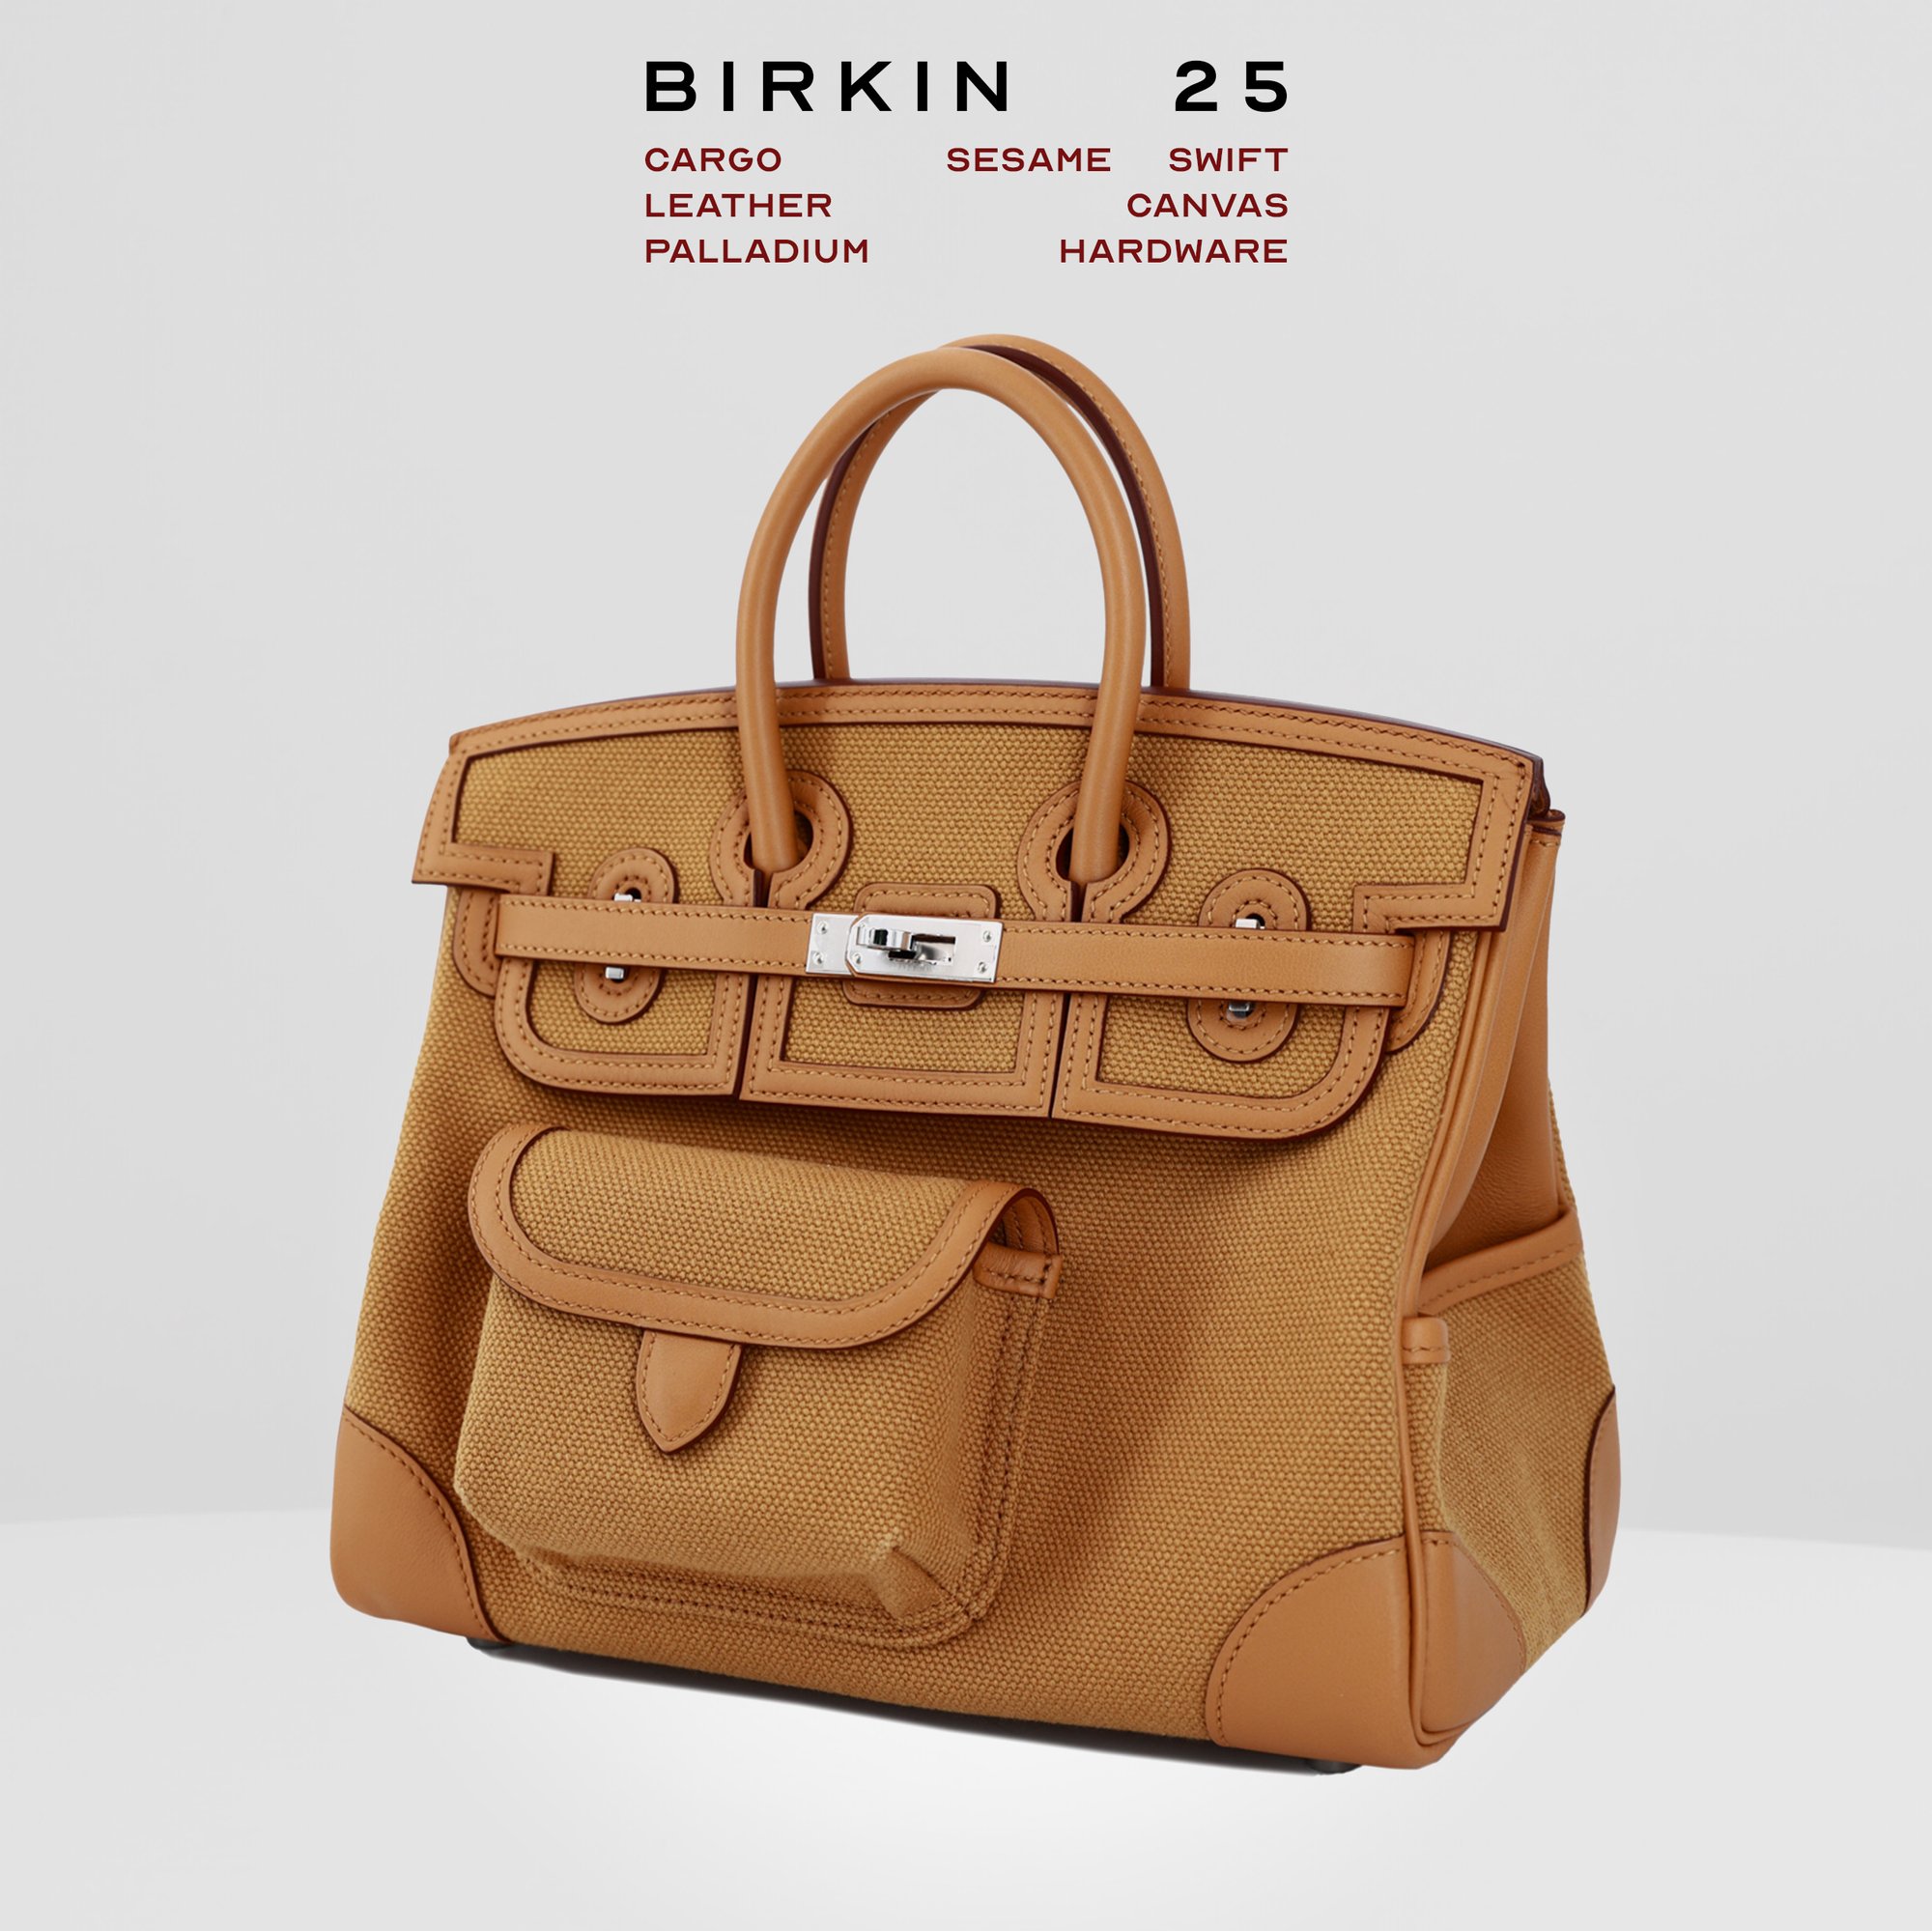 Birkin Cargo Price